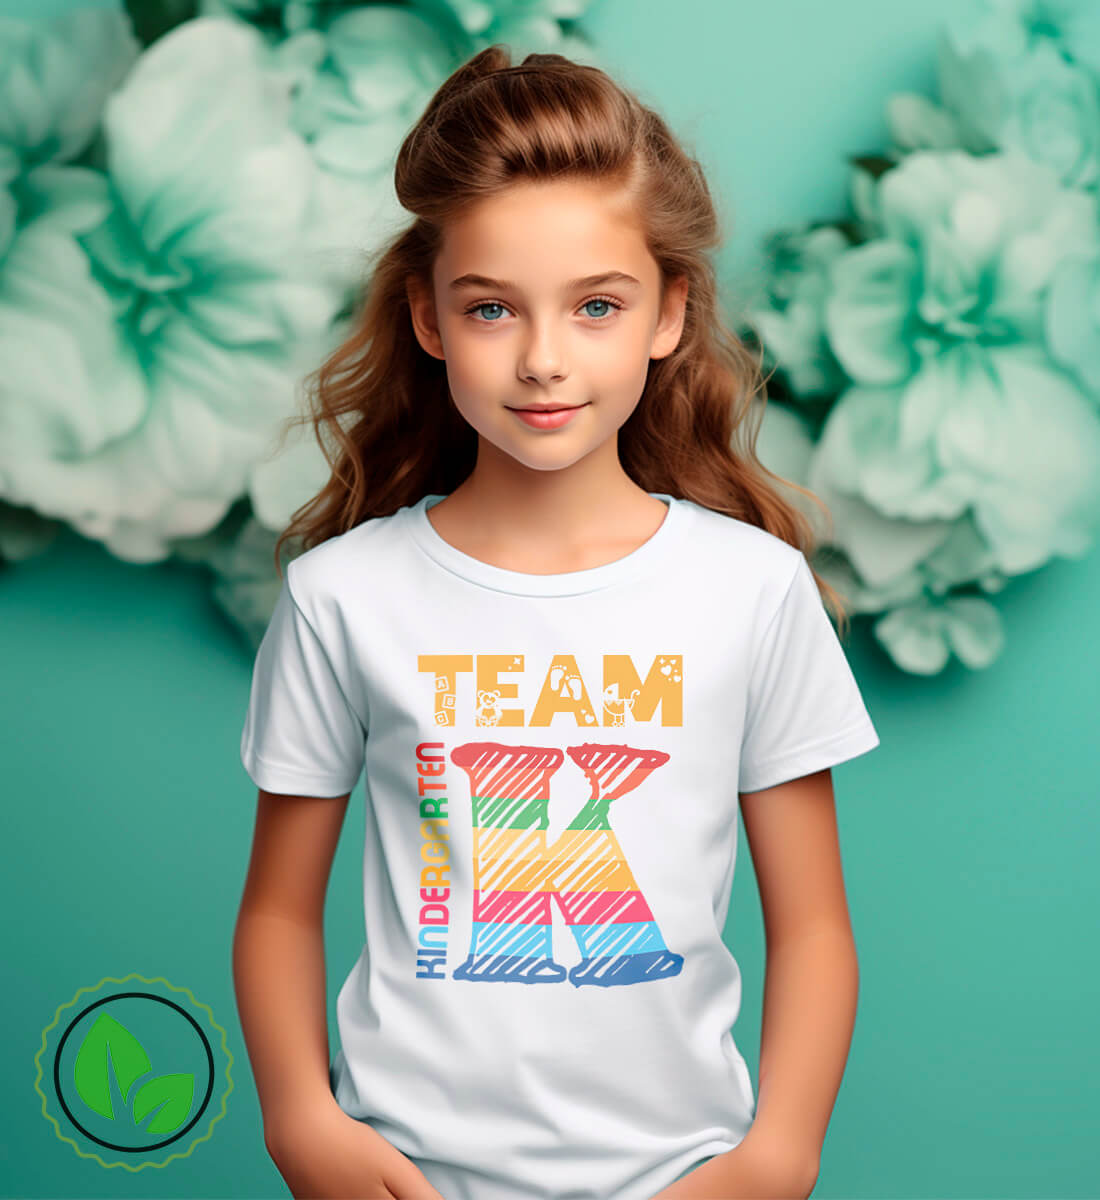 Bild mit einem Maedchen mit weissem t-shirt und text, team kindergarten